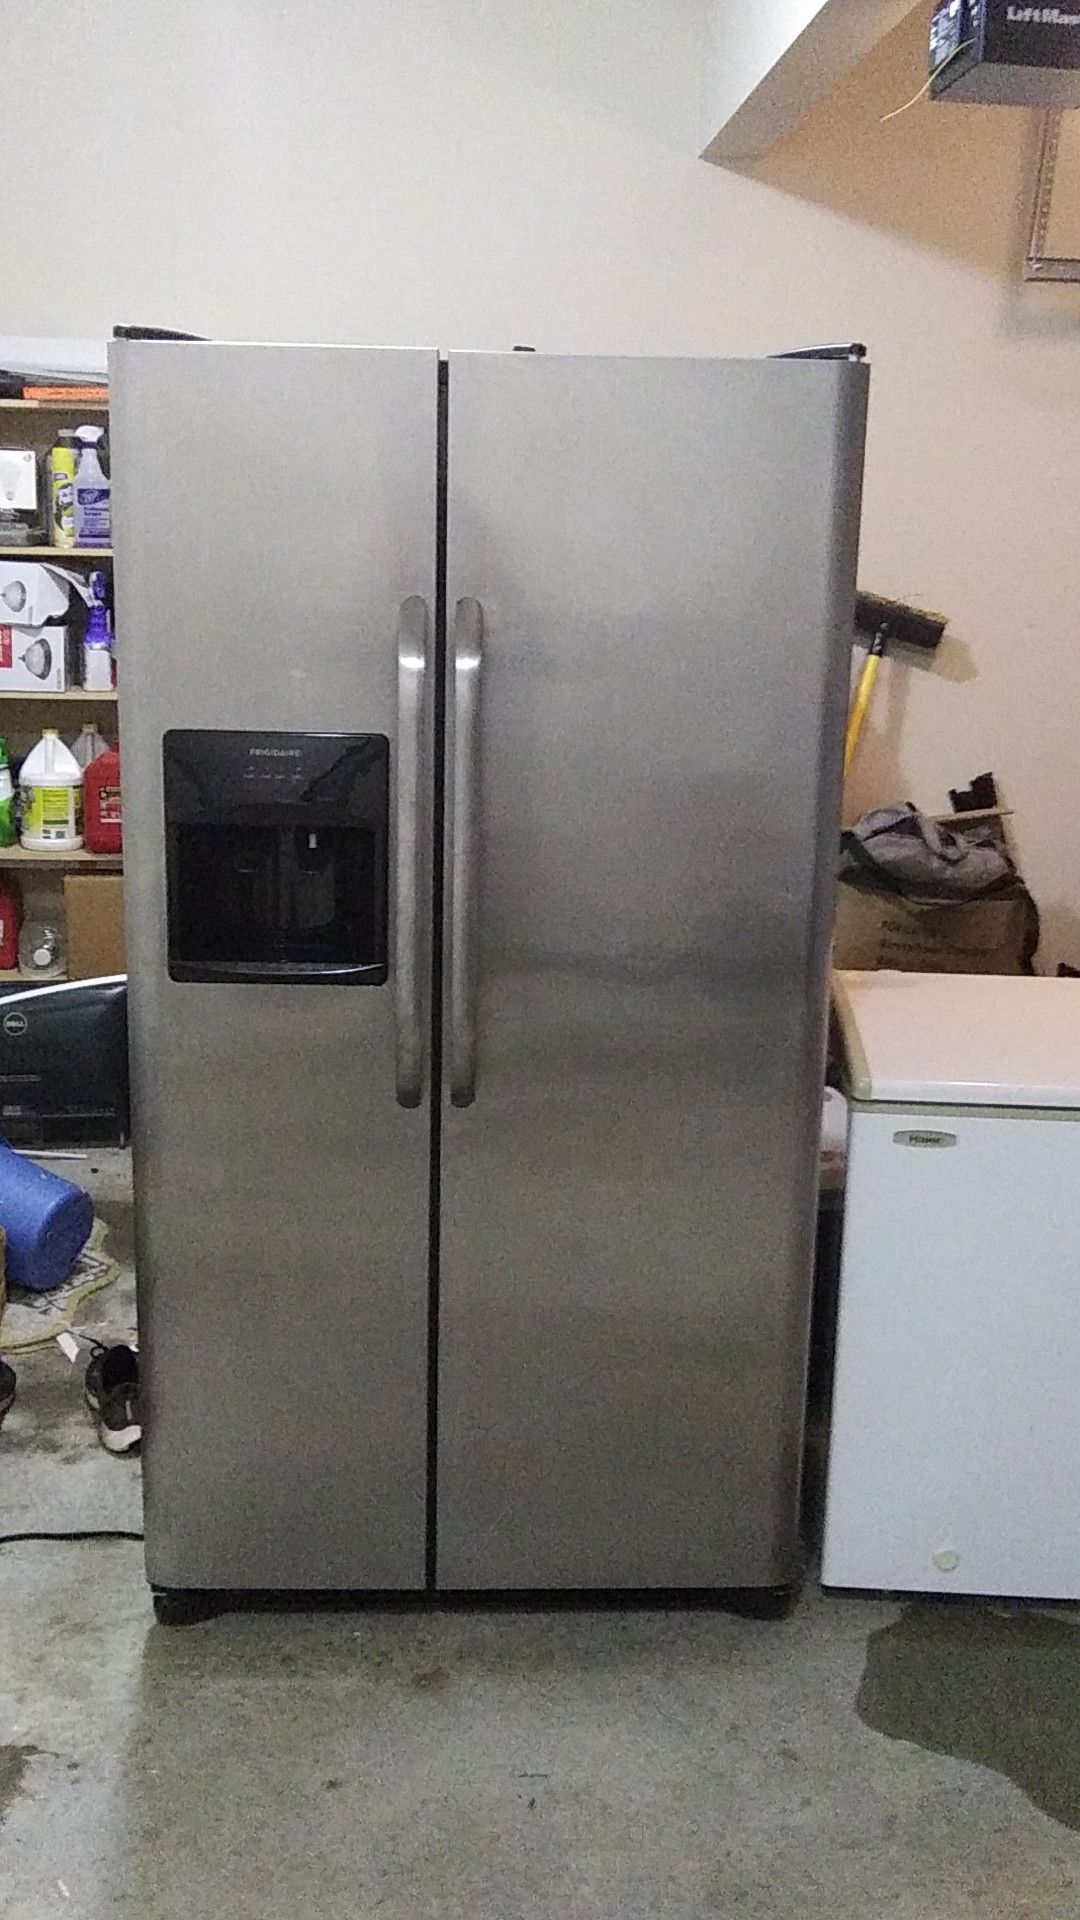 Frigidaire side by side refrigerator